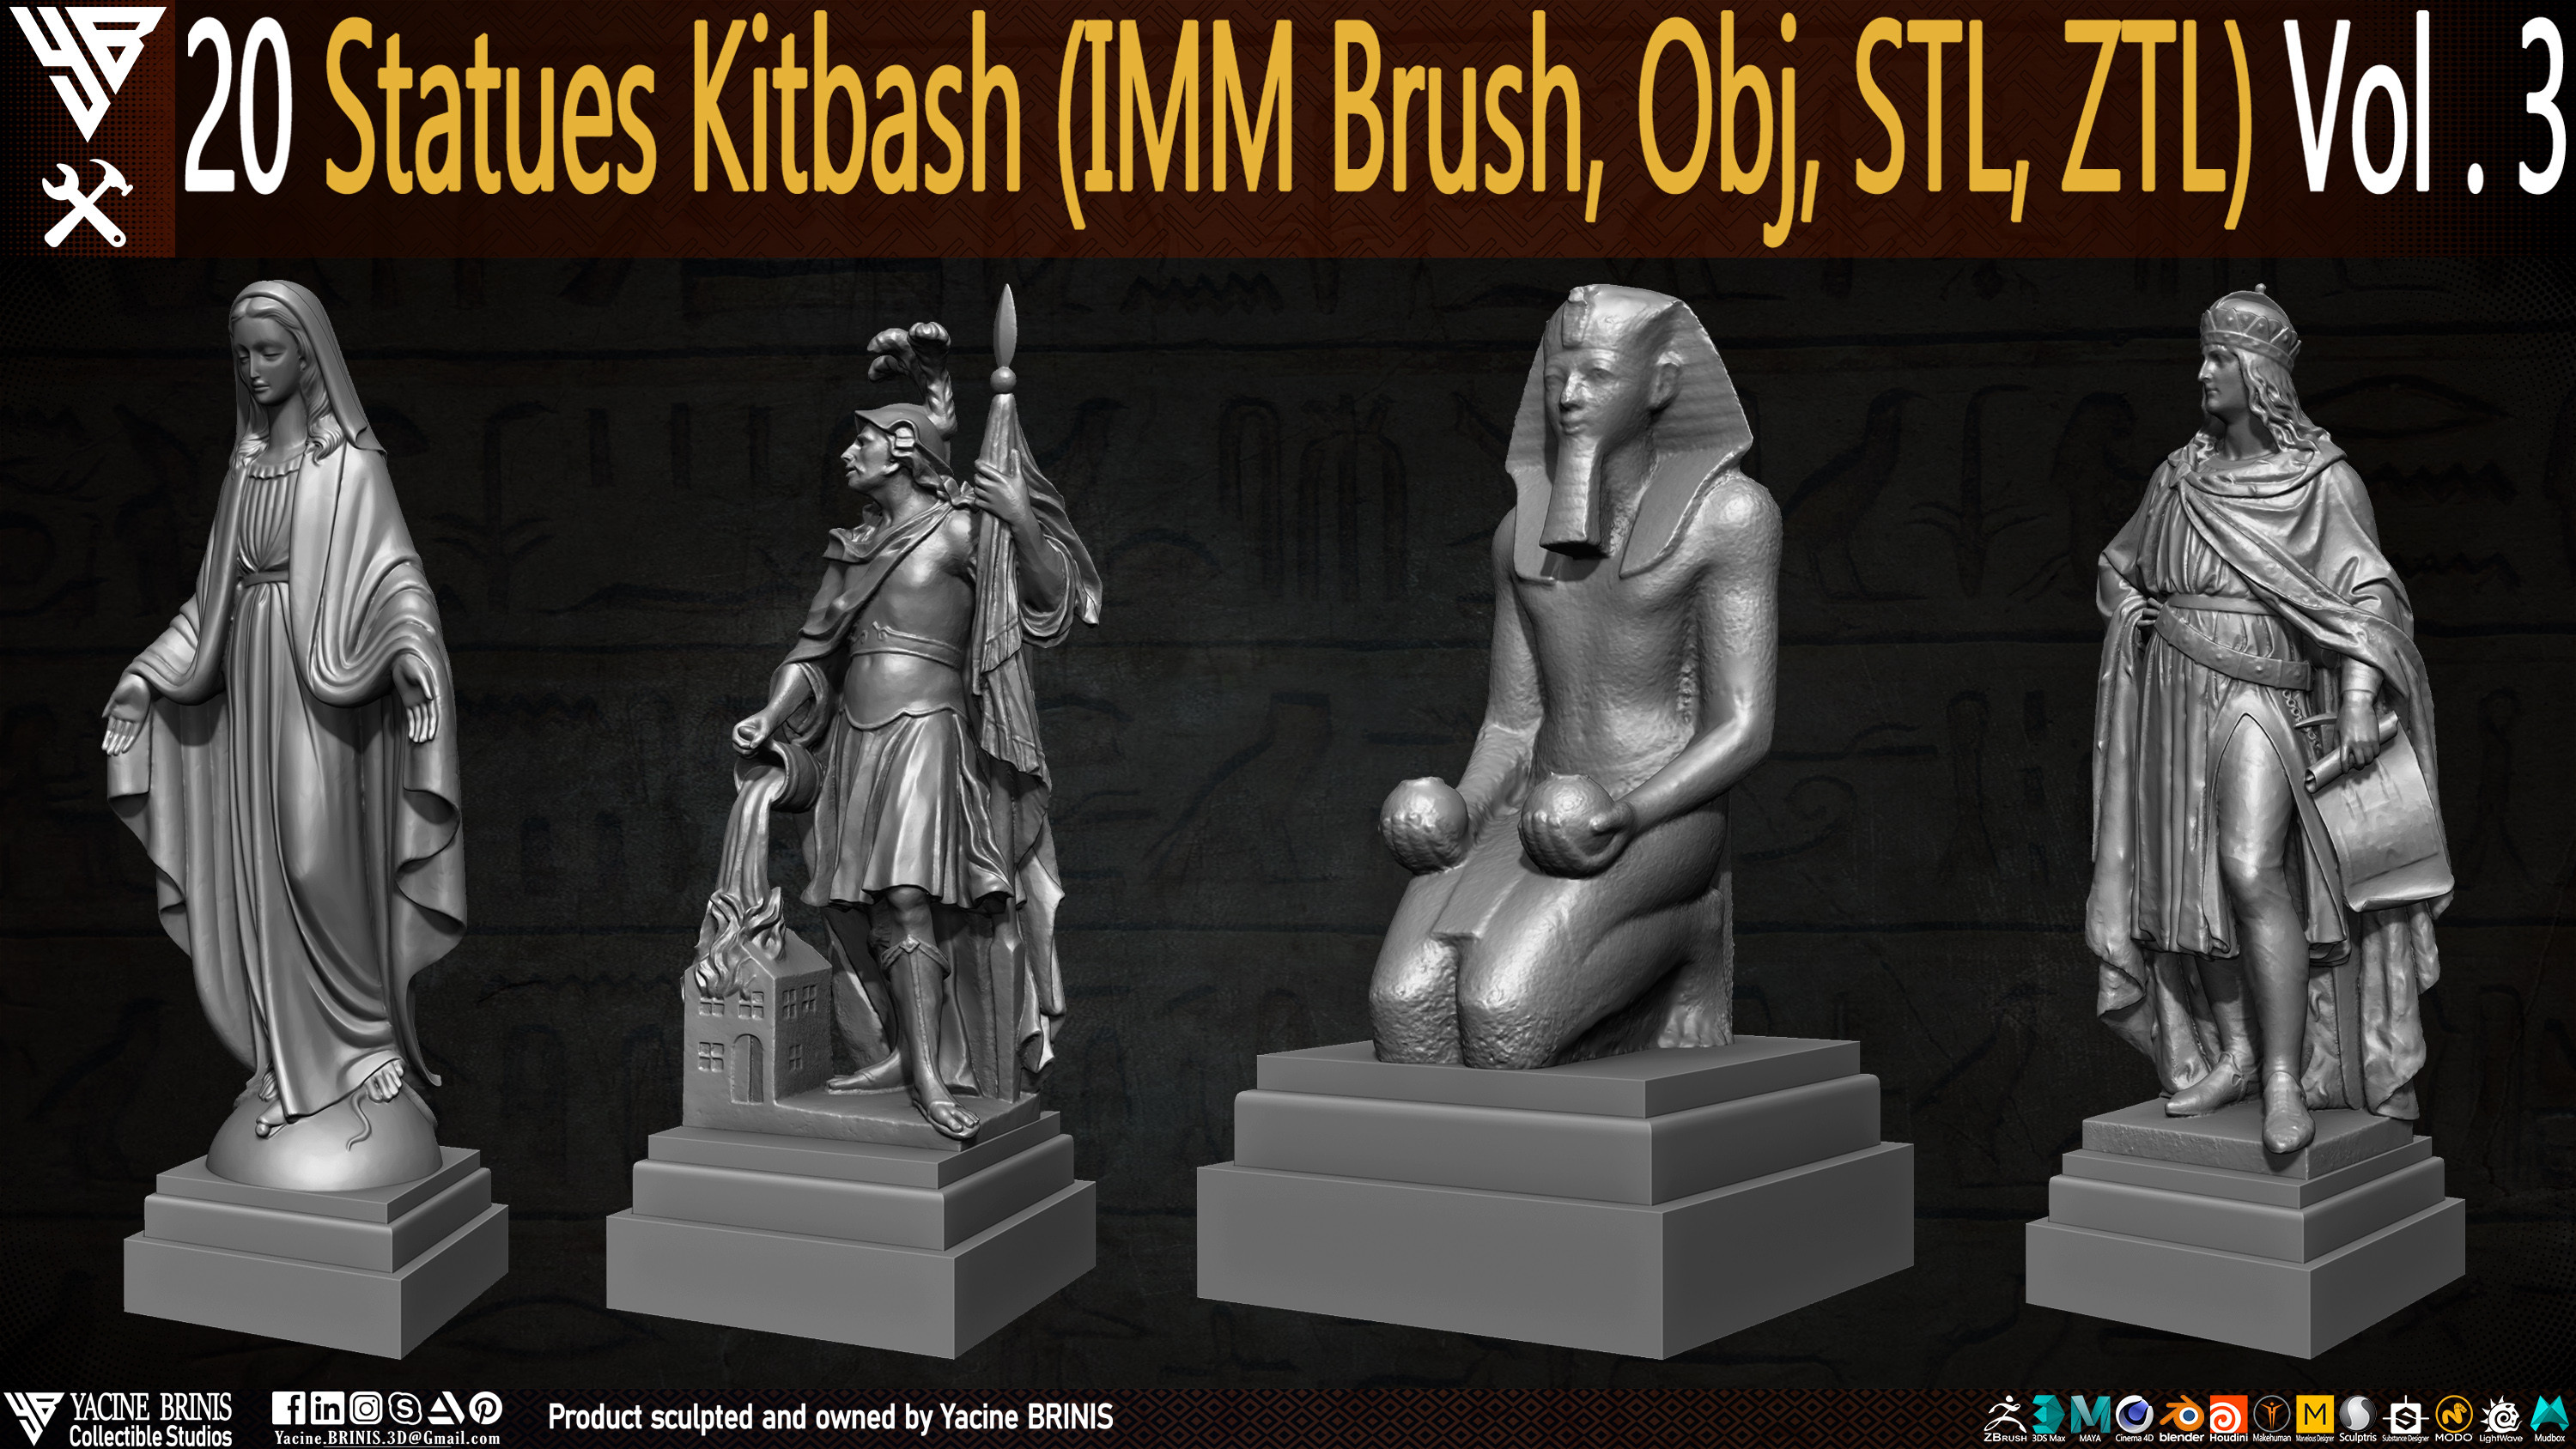 Statues Kitbash by yacine brinis Set 13